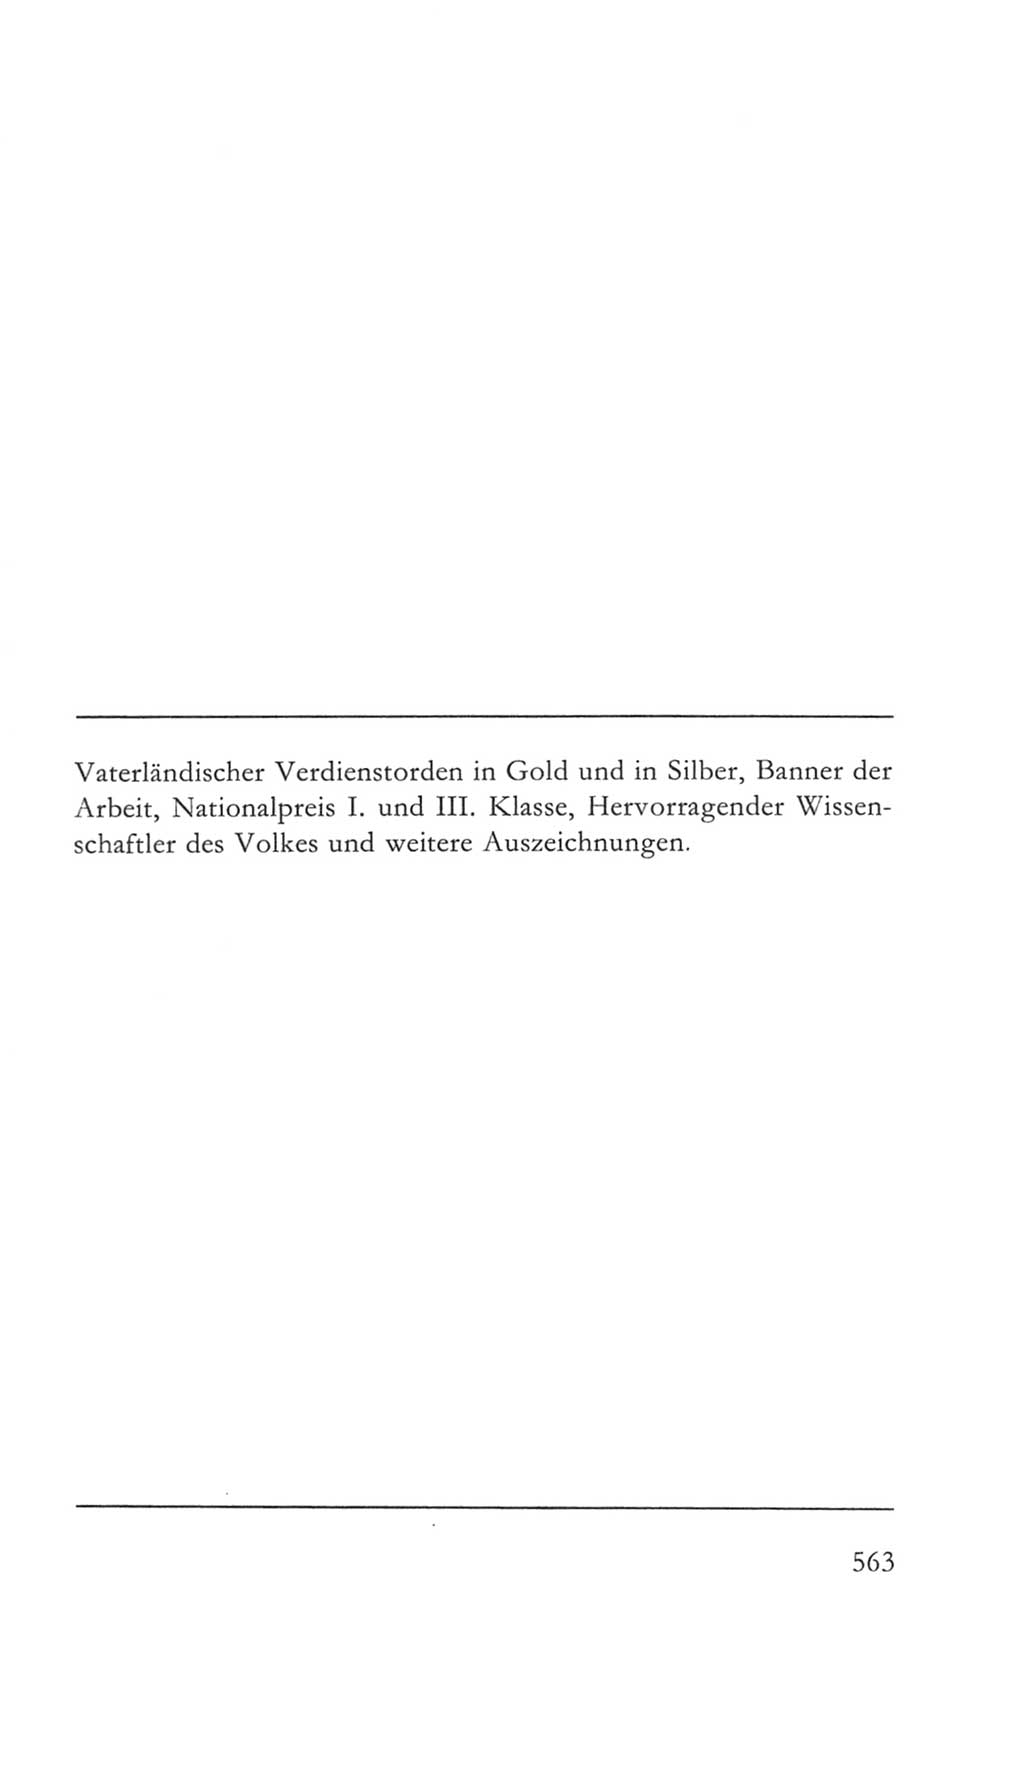 Volkskammer (VK) der Deutschen Demokratischen Republik (DDR) 5. Wahlperiode 1967-1971, Seite 563 (VK. DDR 5. WP. 1967-1971, S. 563)